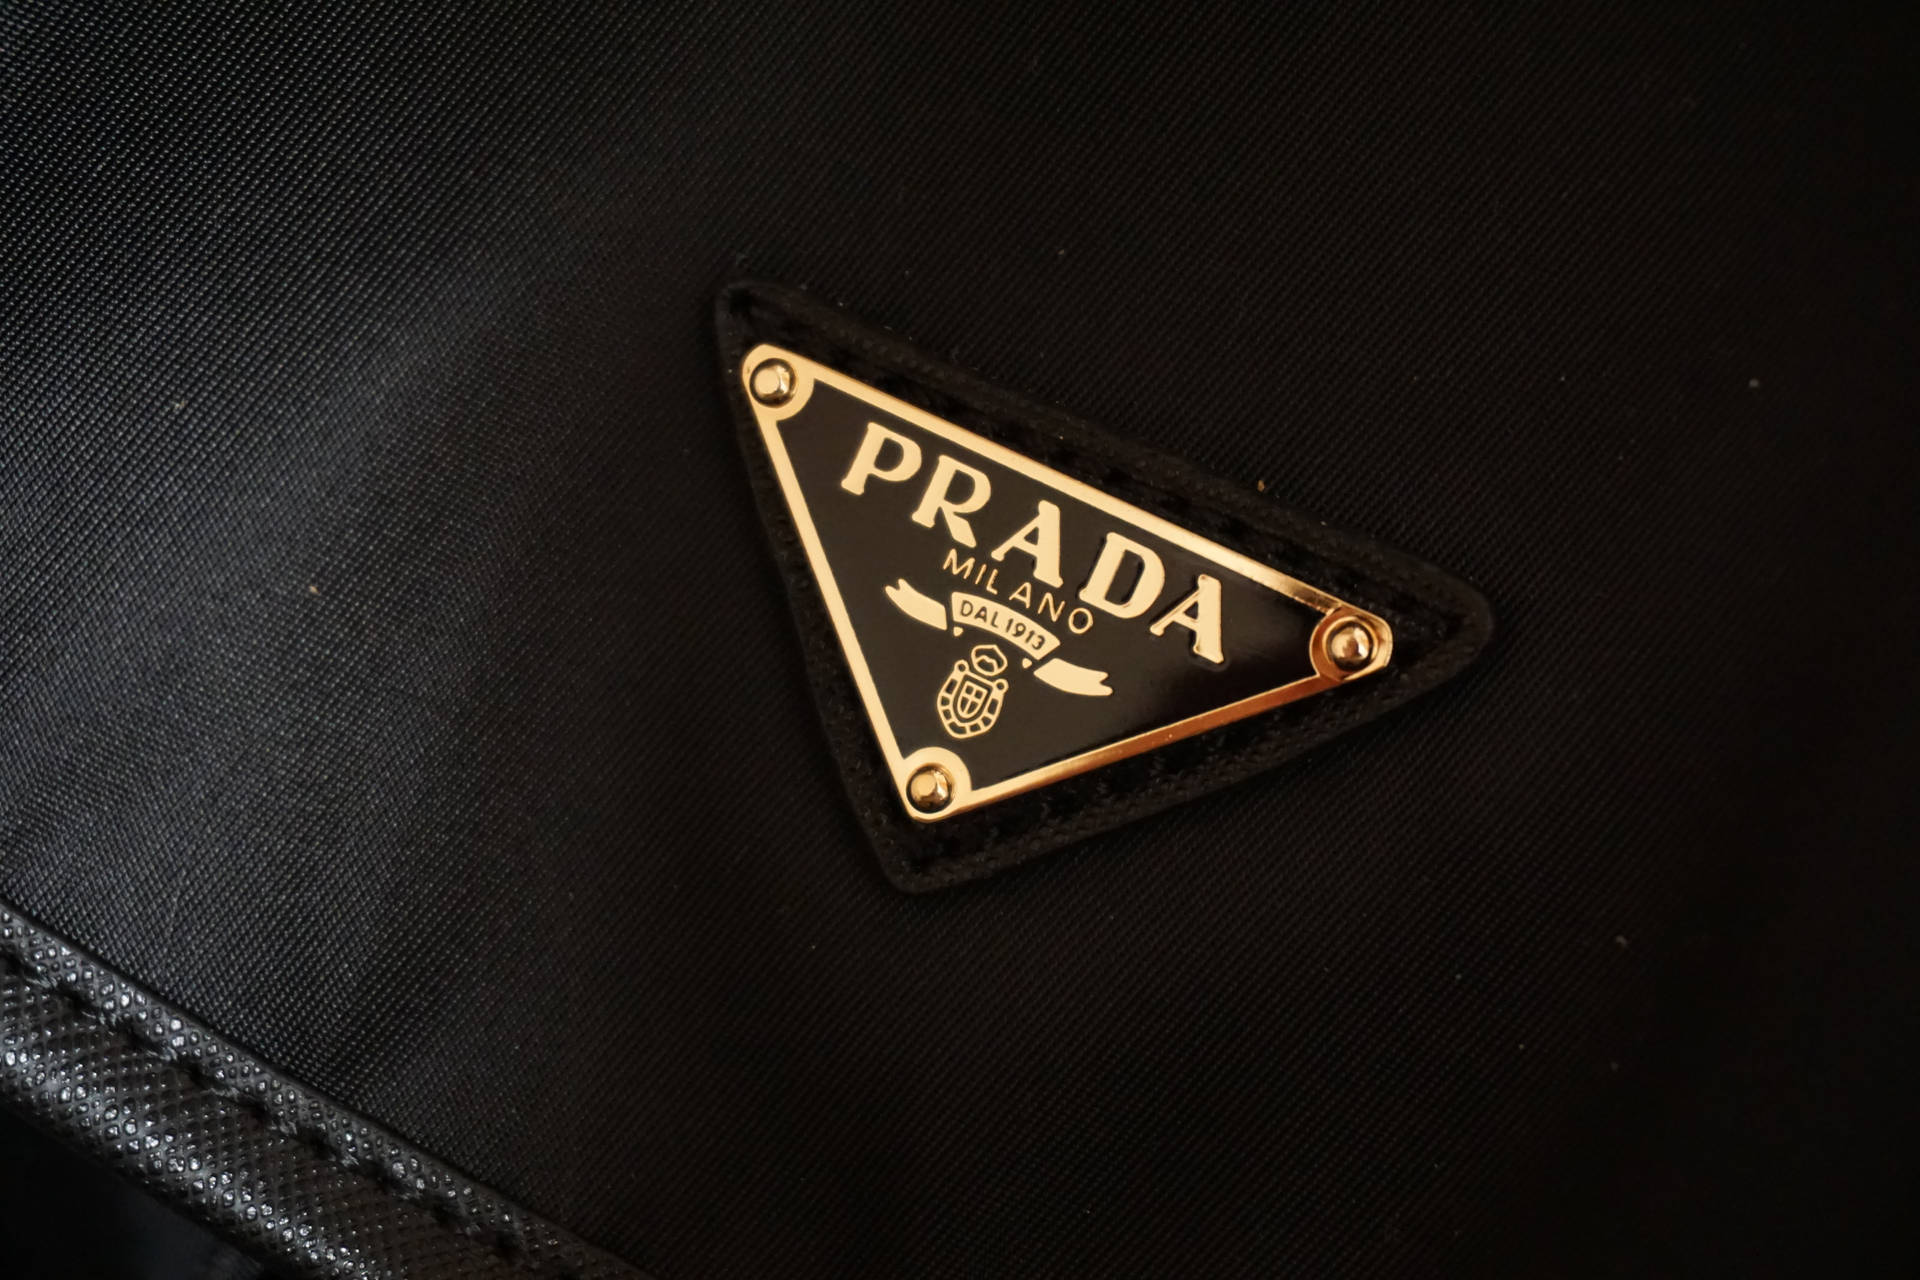 Prada Gold Badge